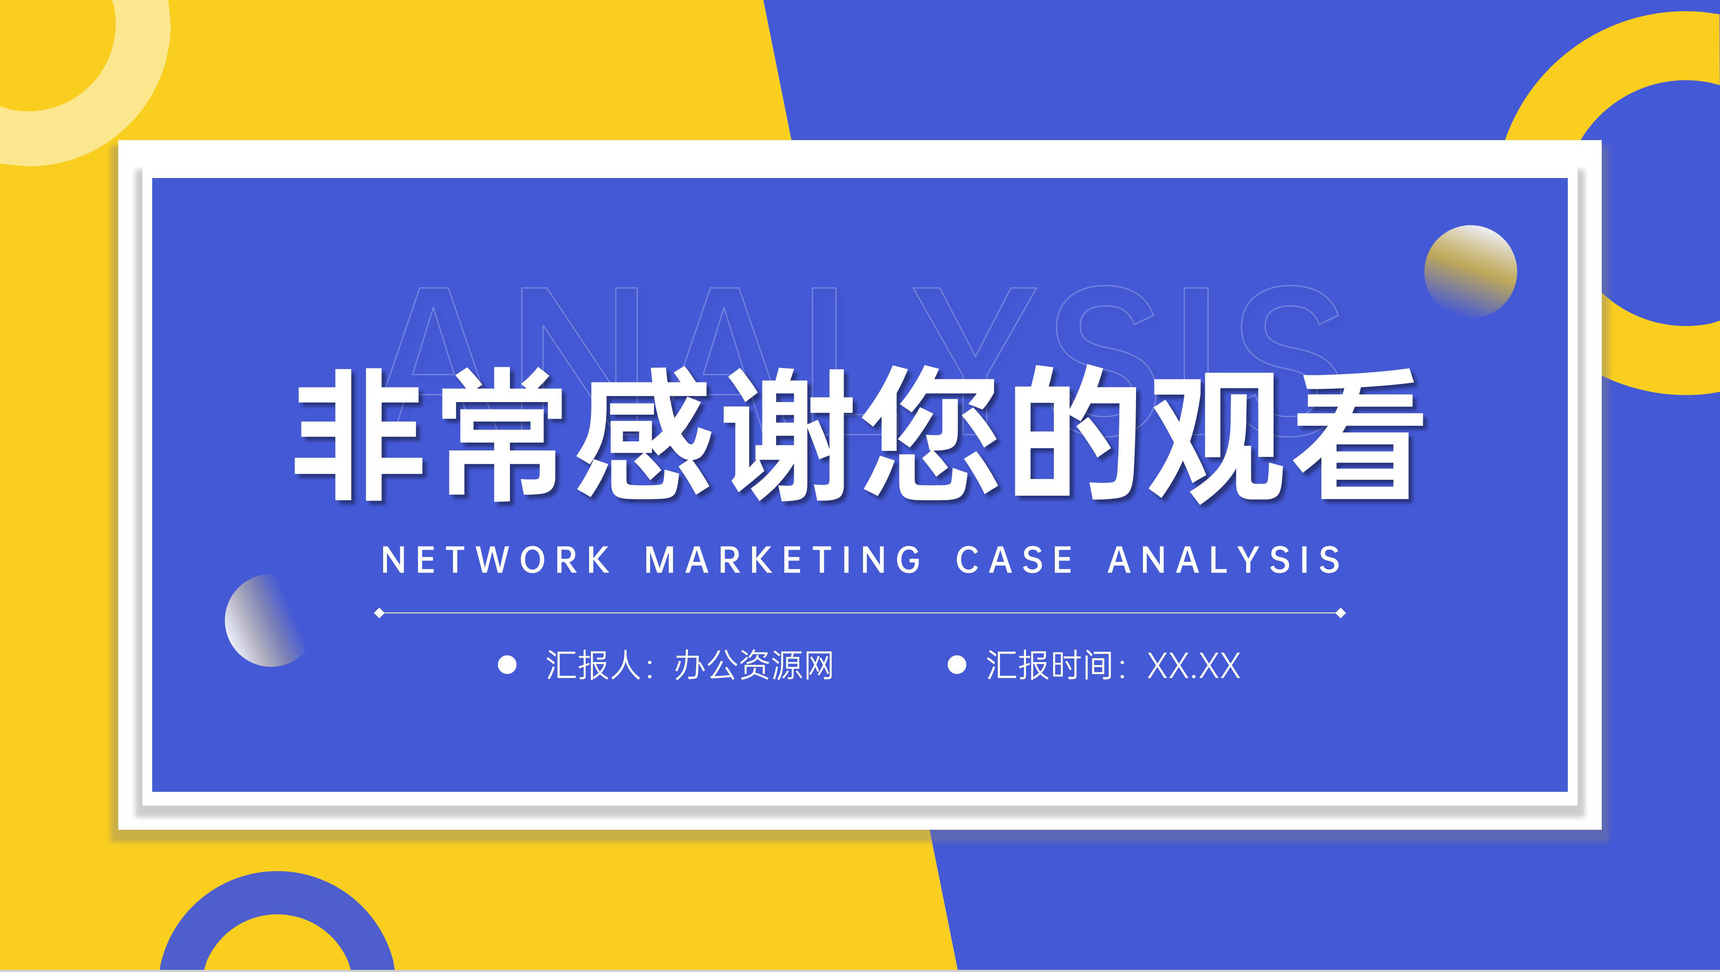 蓝黄撞色网络营销案例分析品牌招商宣讲PPT模板-11